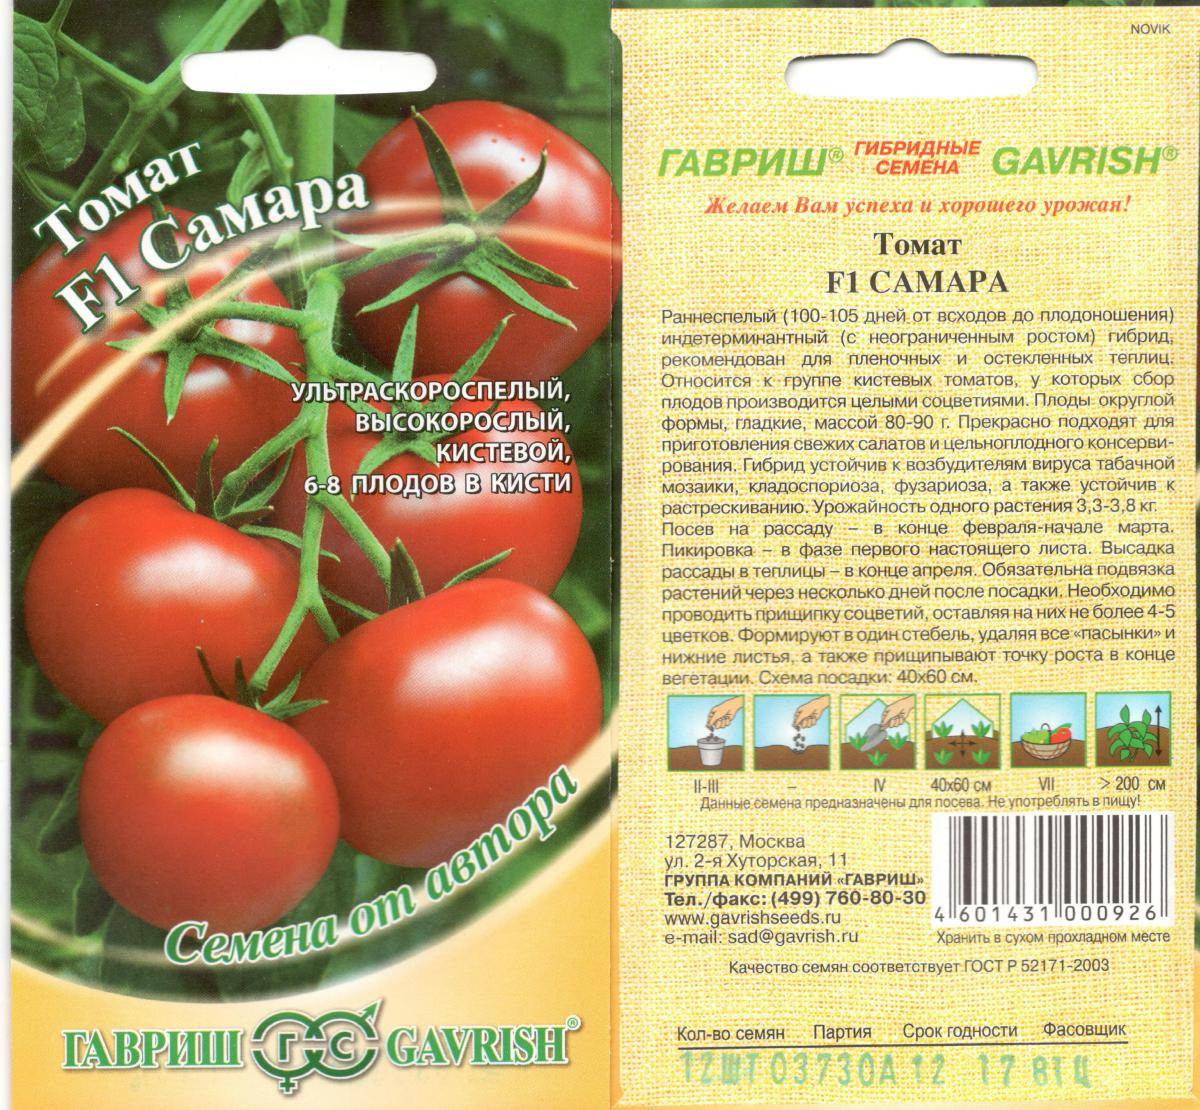 Сорта помидоров для беларуси: описание, фото, отзывы, томаты описание сорта фото отзывы. - отзывы и жалобы